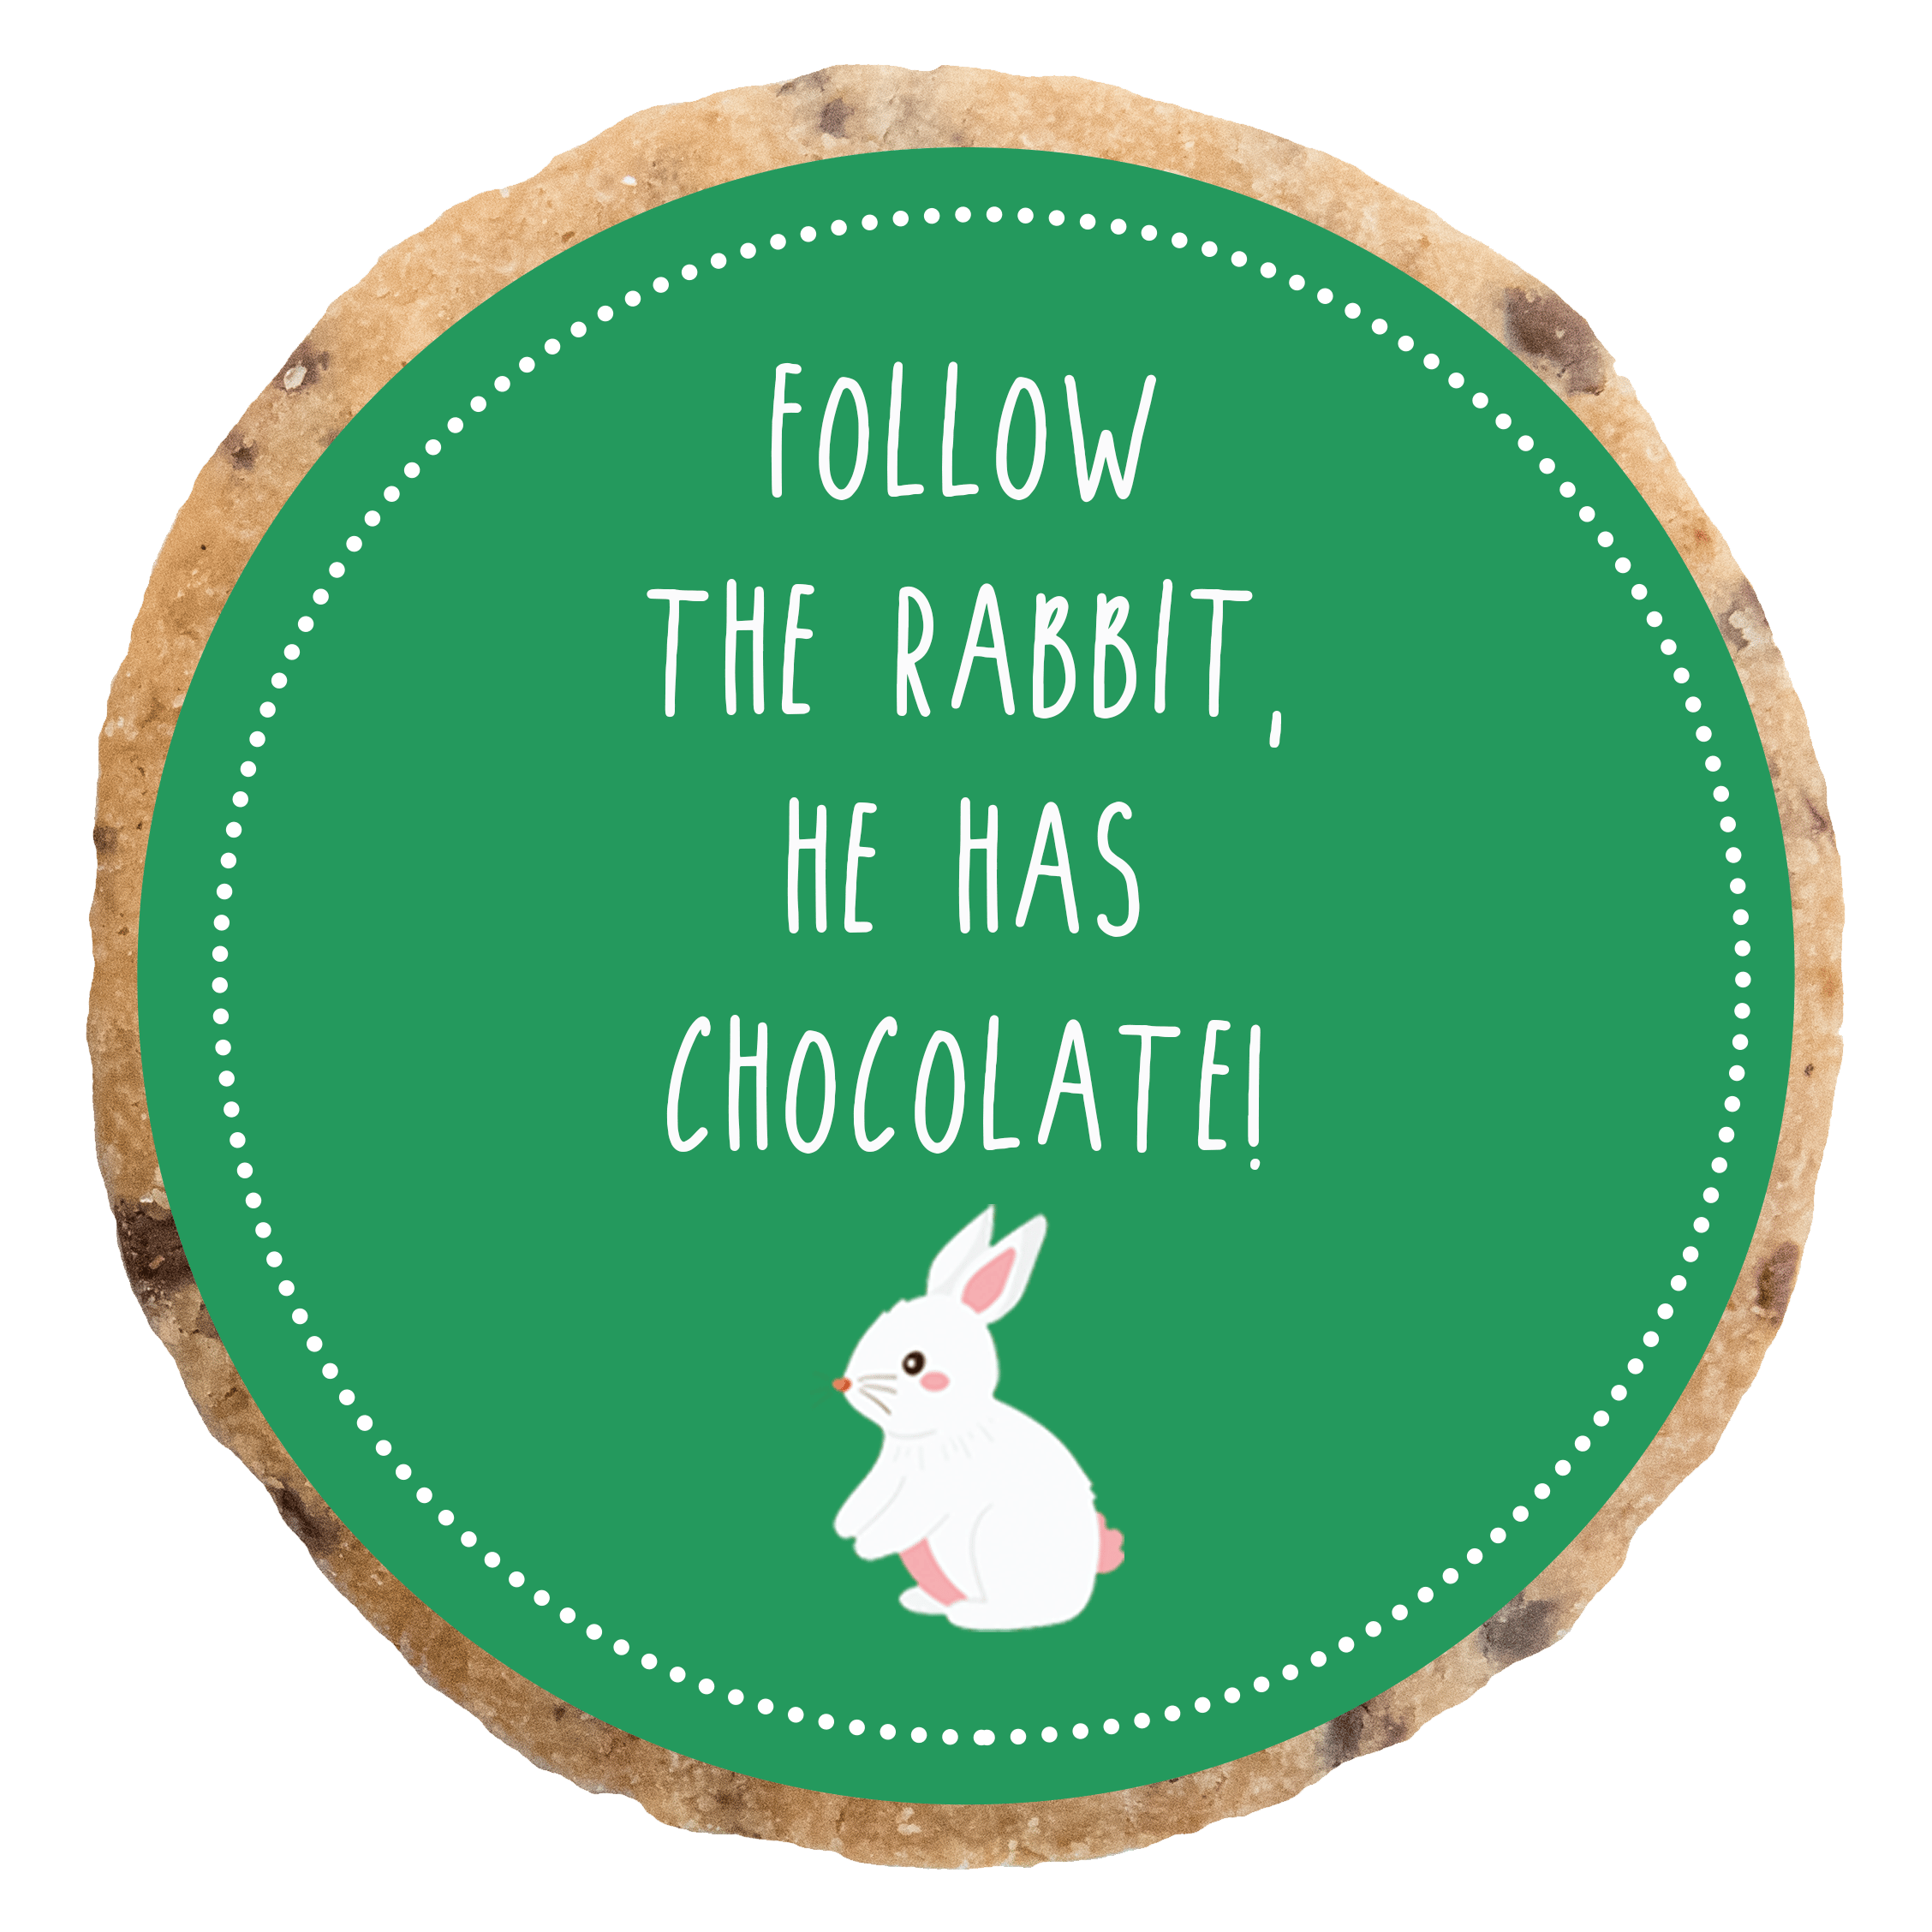 "Follow the rabbit" MotivKEKS